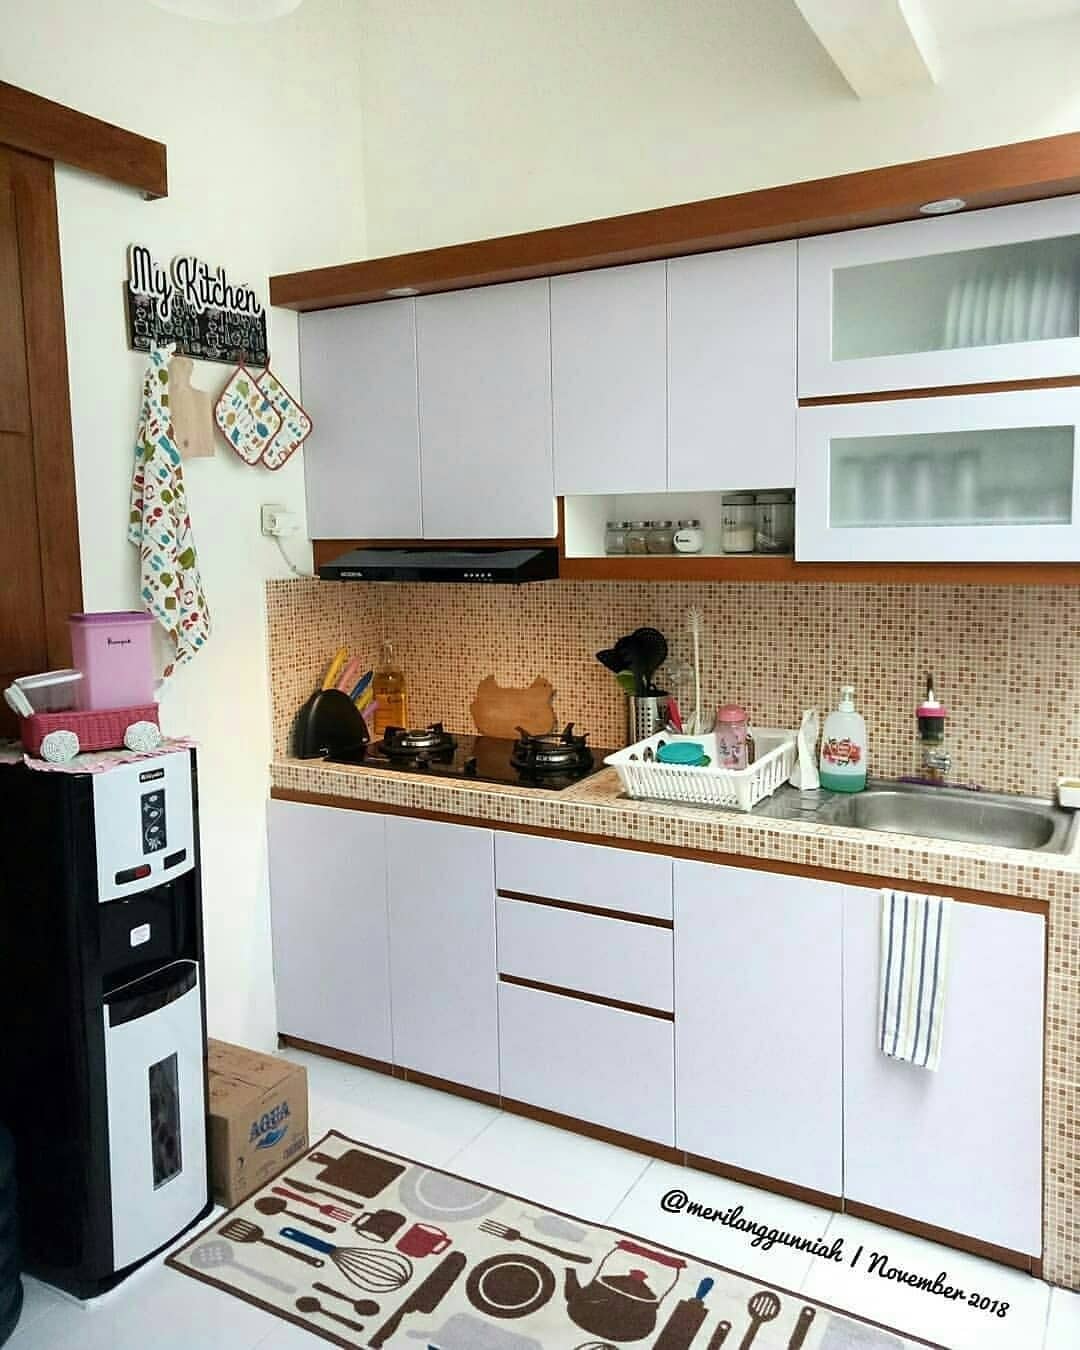 Ide Untuk Dapur Minimalis Modern Ukuran Kecil Agar Terlihat Rapi Rumah Inspirasi Dan Informasi Sederhana